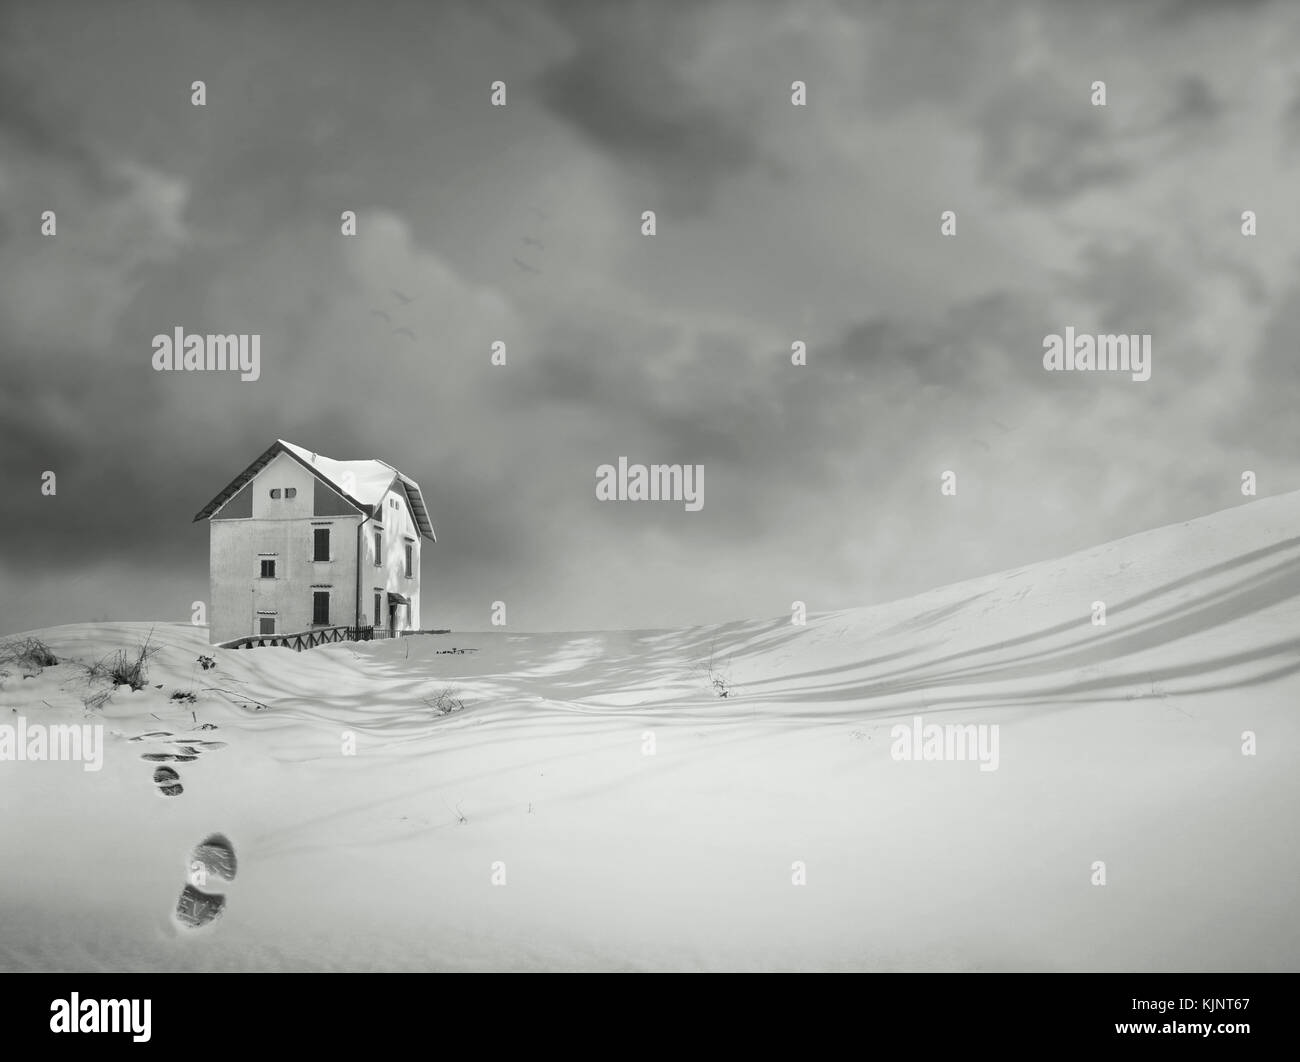 Une maison isolée, dans un merveilleux paysage de neige et ciel dramatique en noir et blanc Banque D'Images